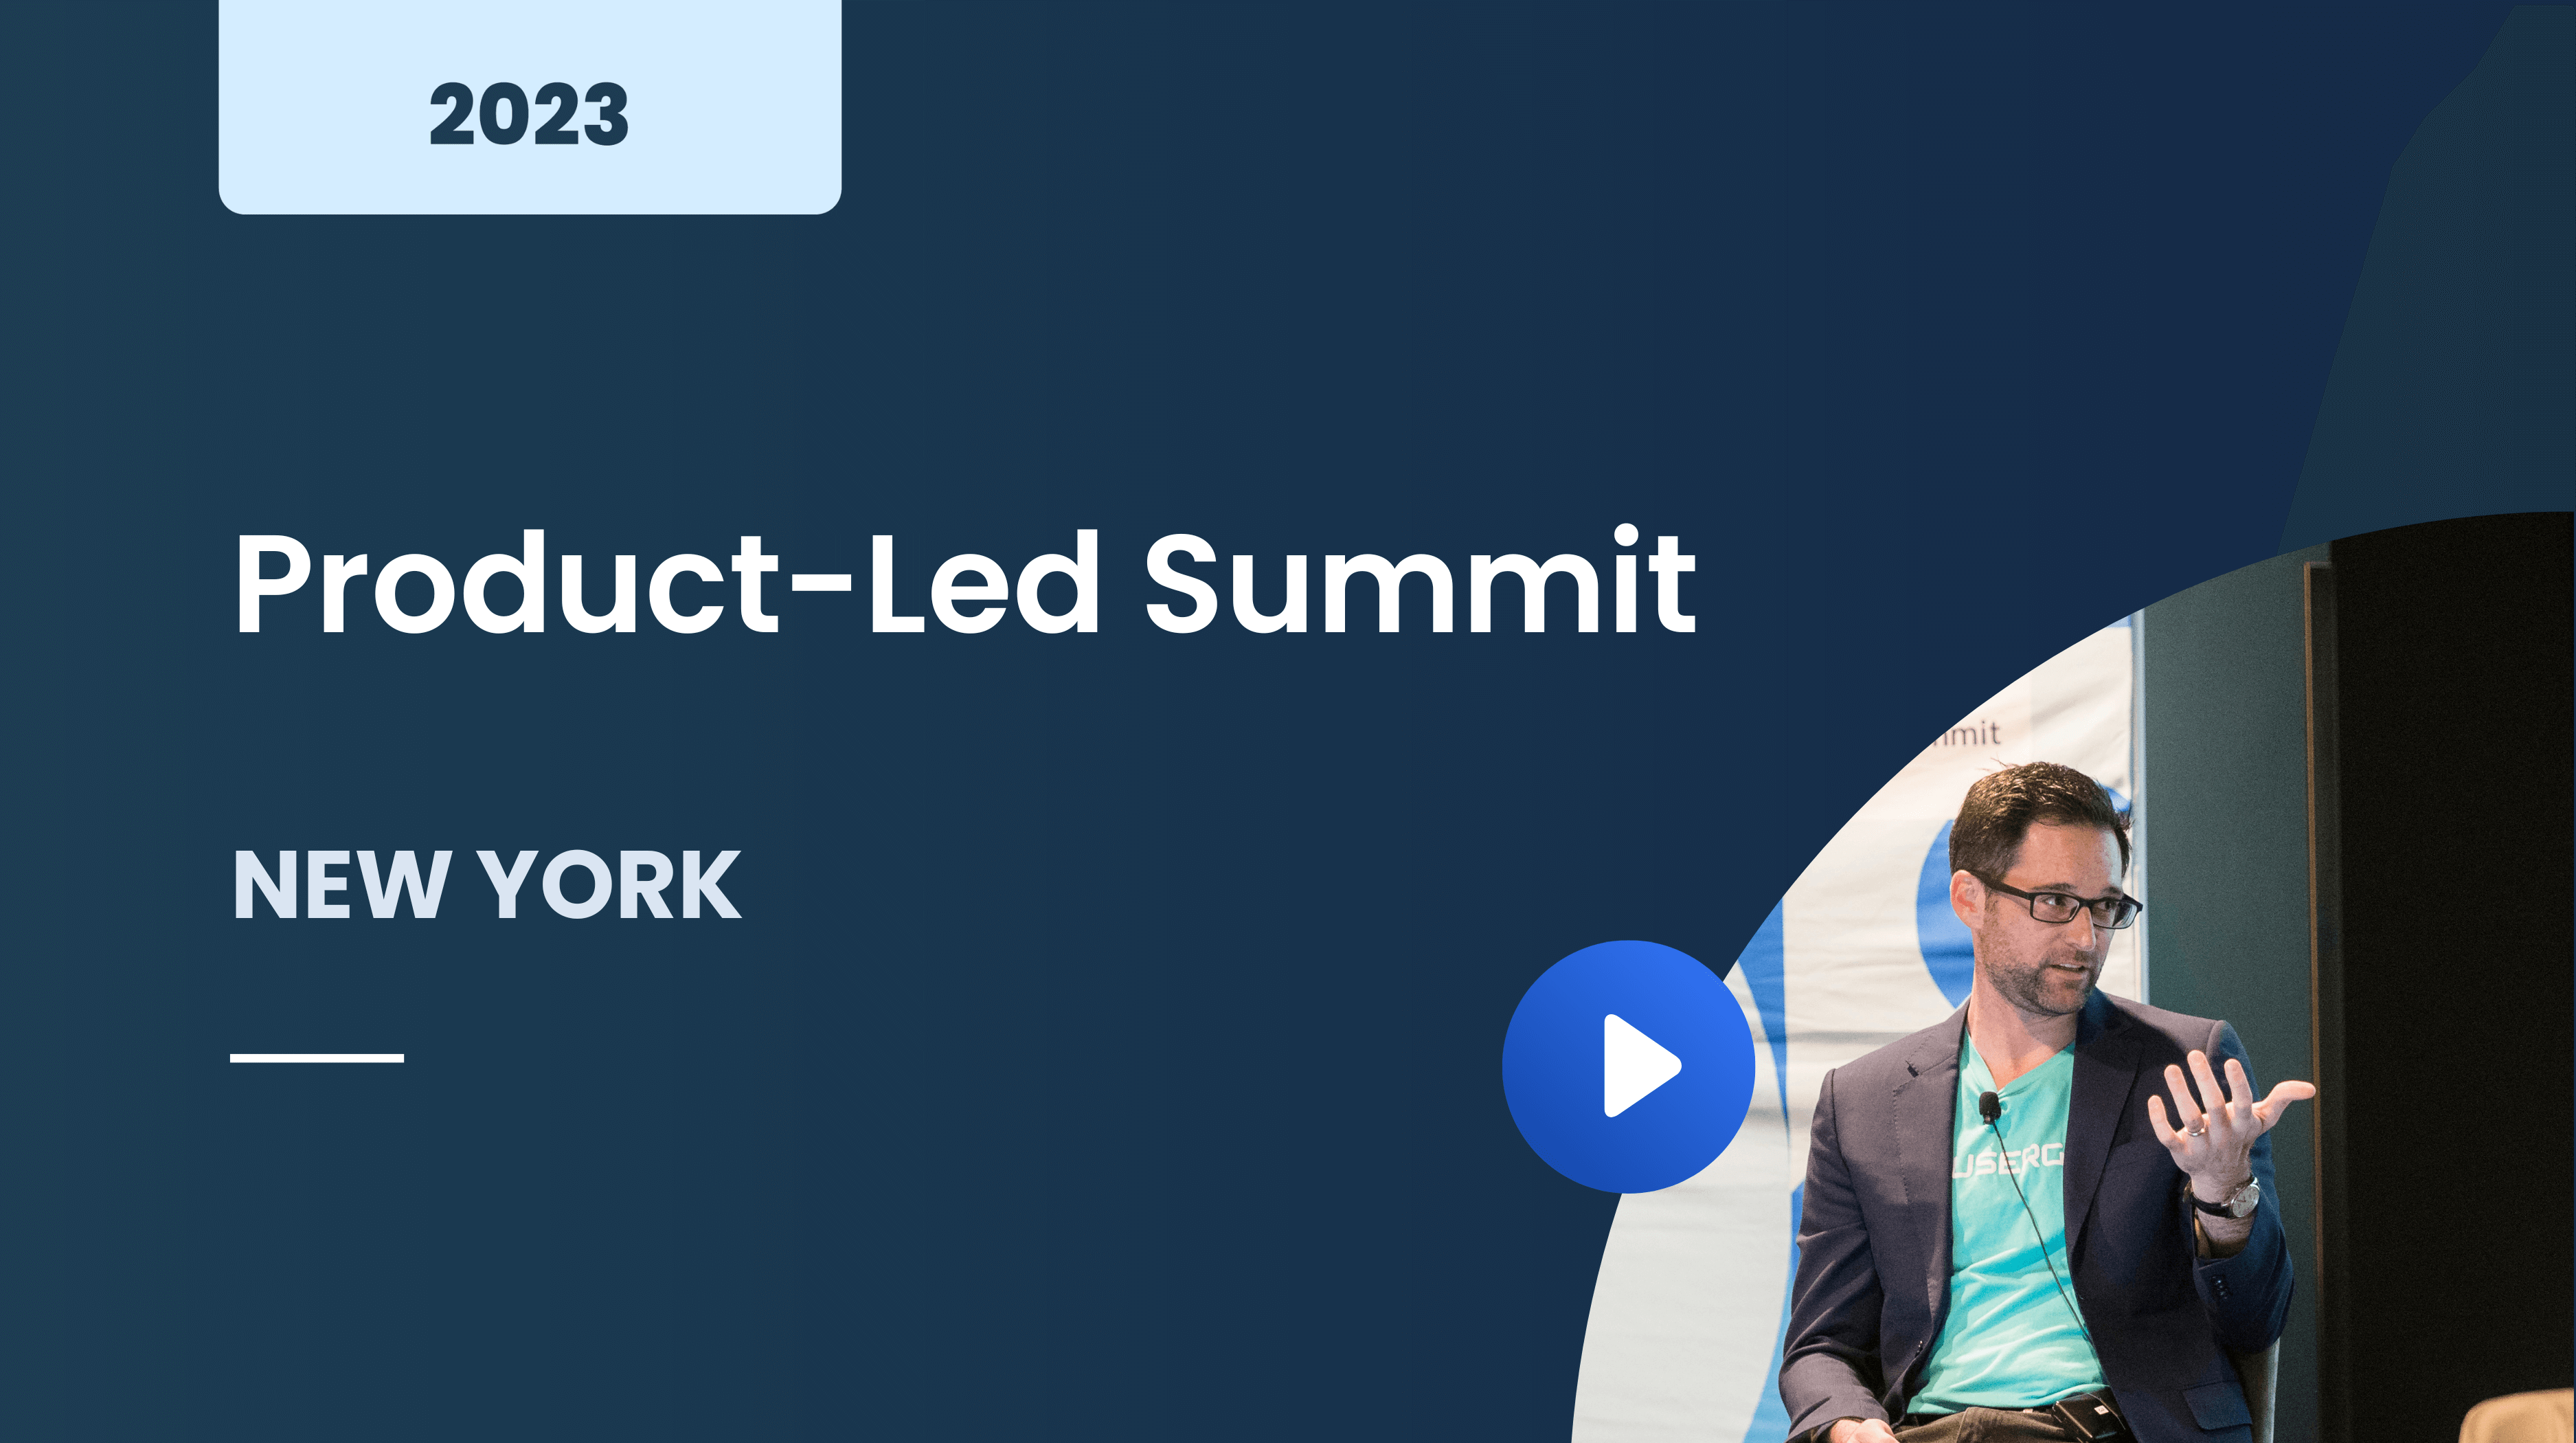 Product-Led Summit New York 2023